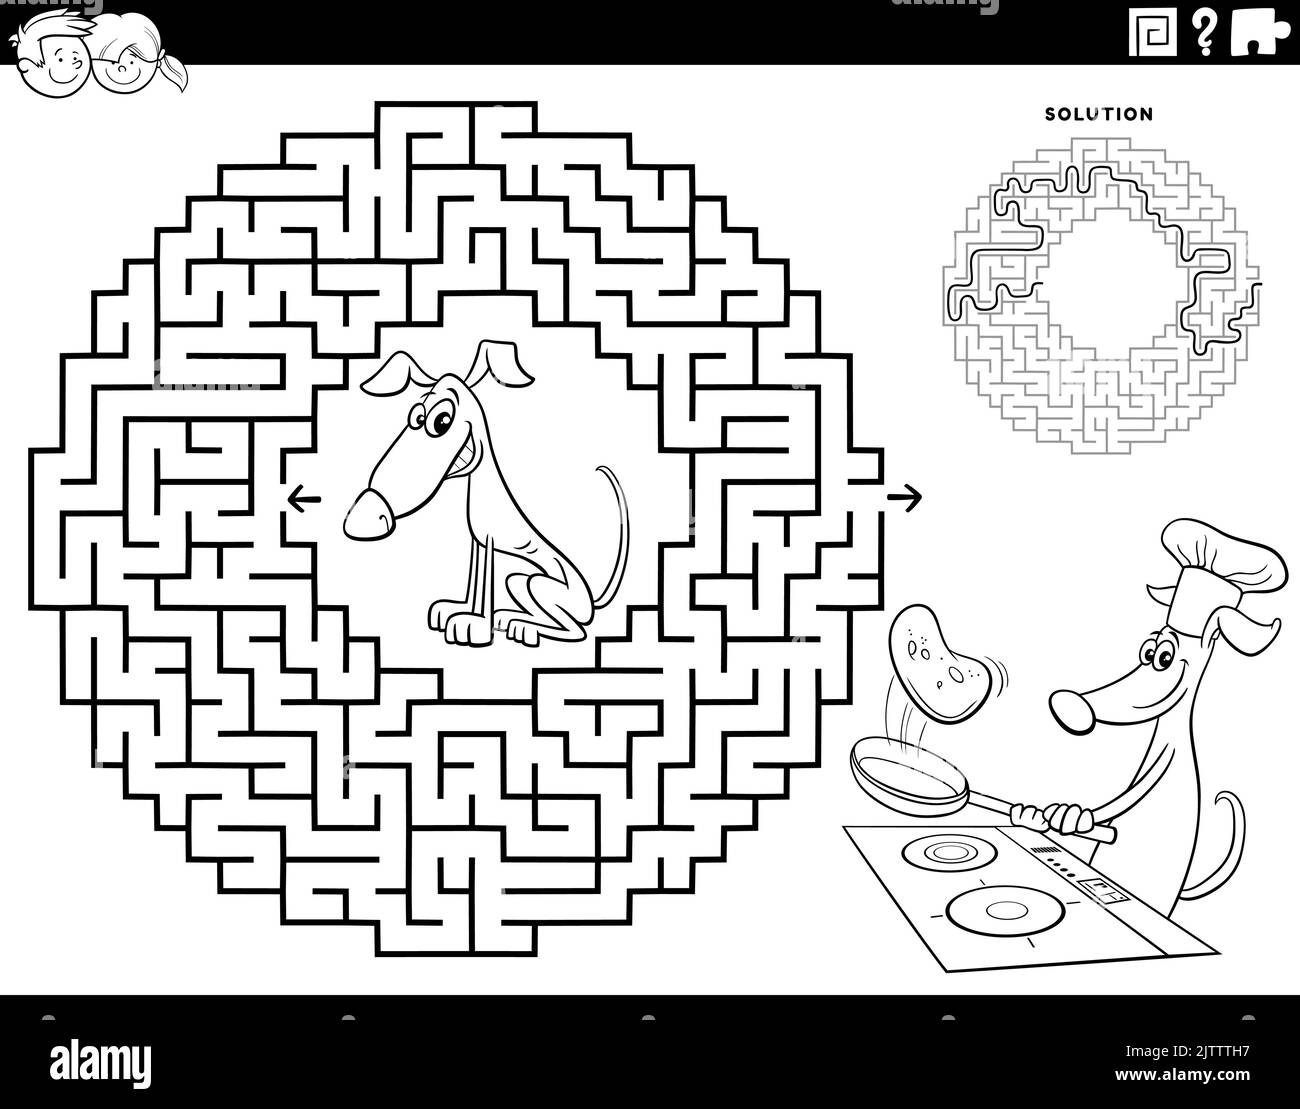 Schwarz-Weiß-Cartoon-Illustration der pädagogischen Labyrinth Puzzle-Spiel für Kinder mit Hund machen Pfannkuchen Malseite Stock Vektor